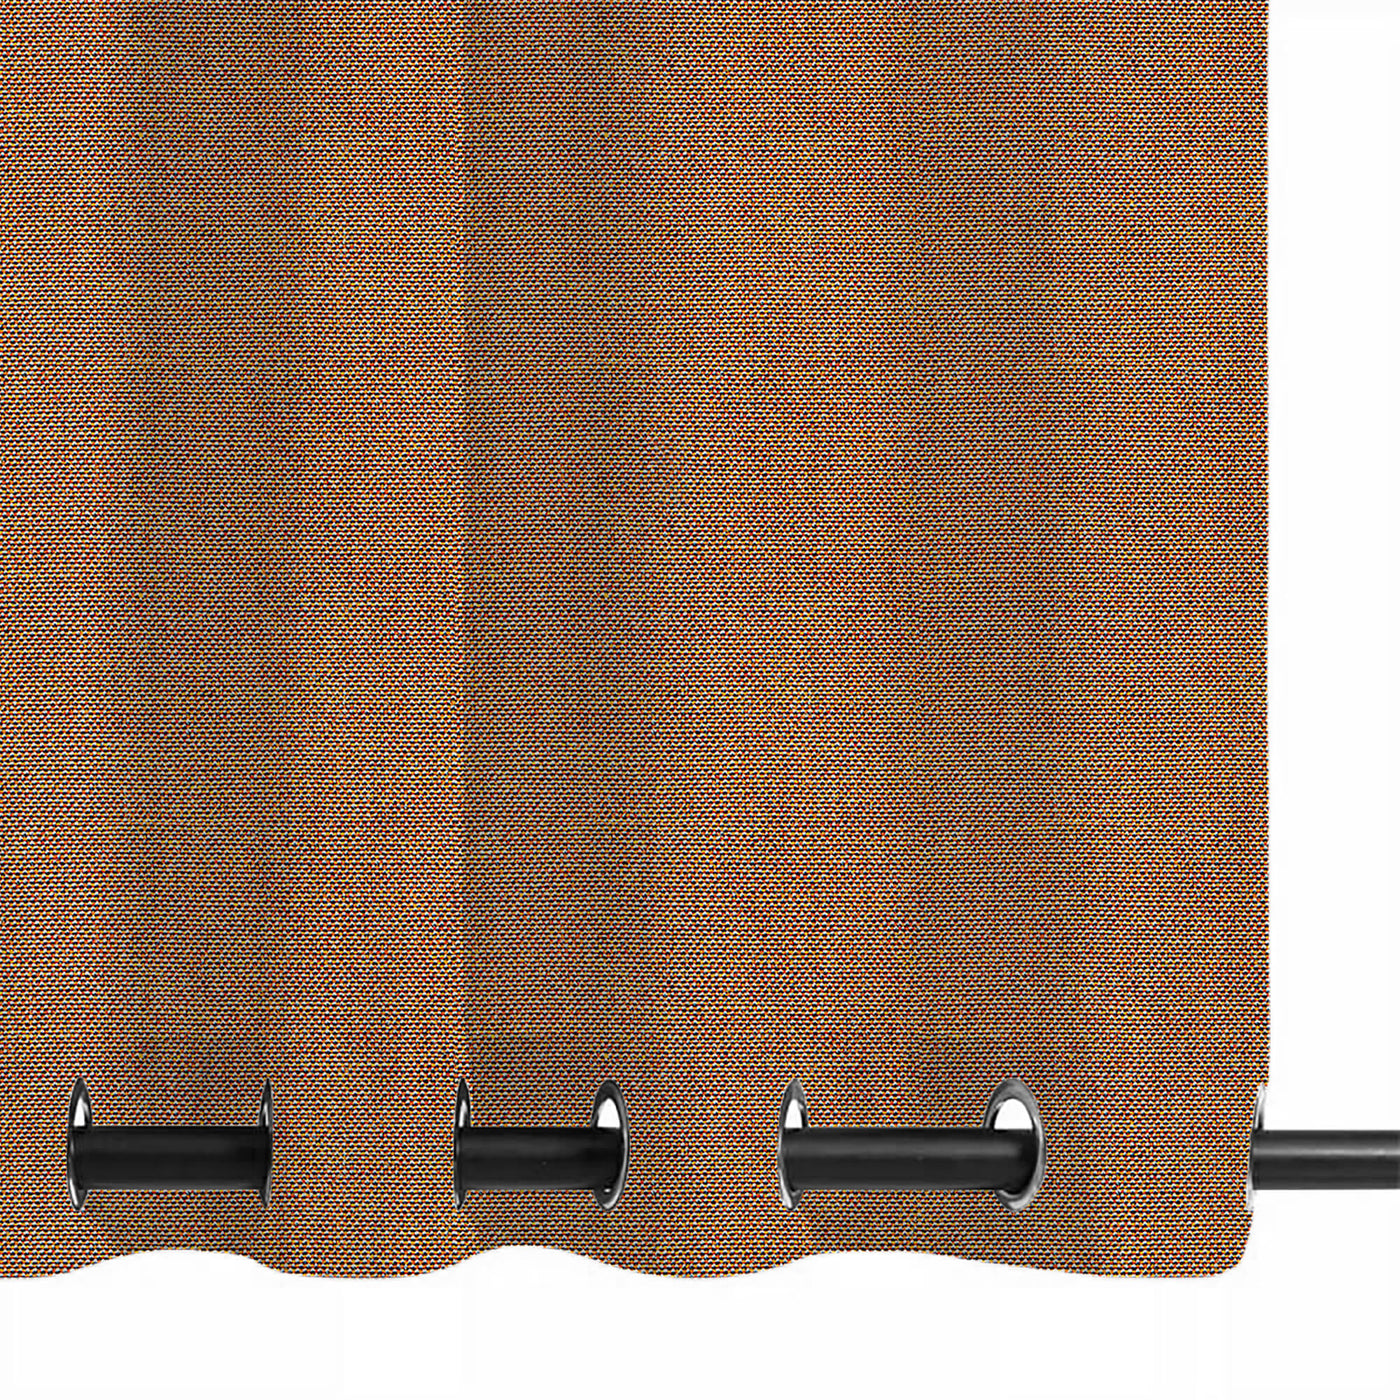 PENGI Outdoor Curtains Waterproof - Blend Tobacco Brown